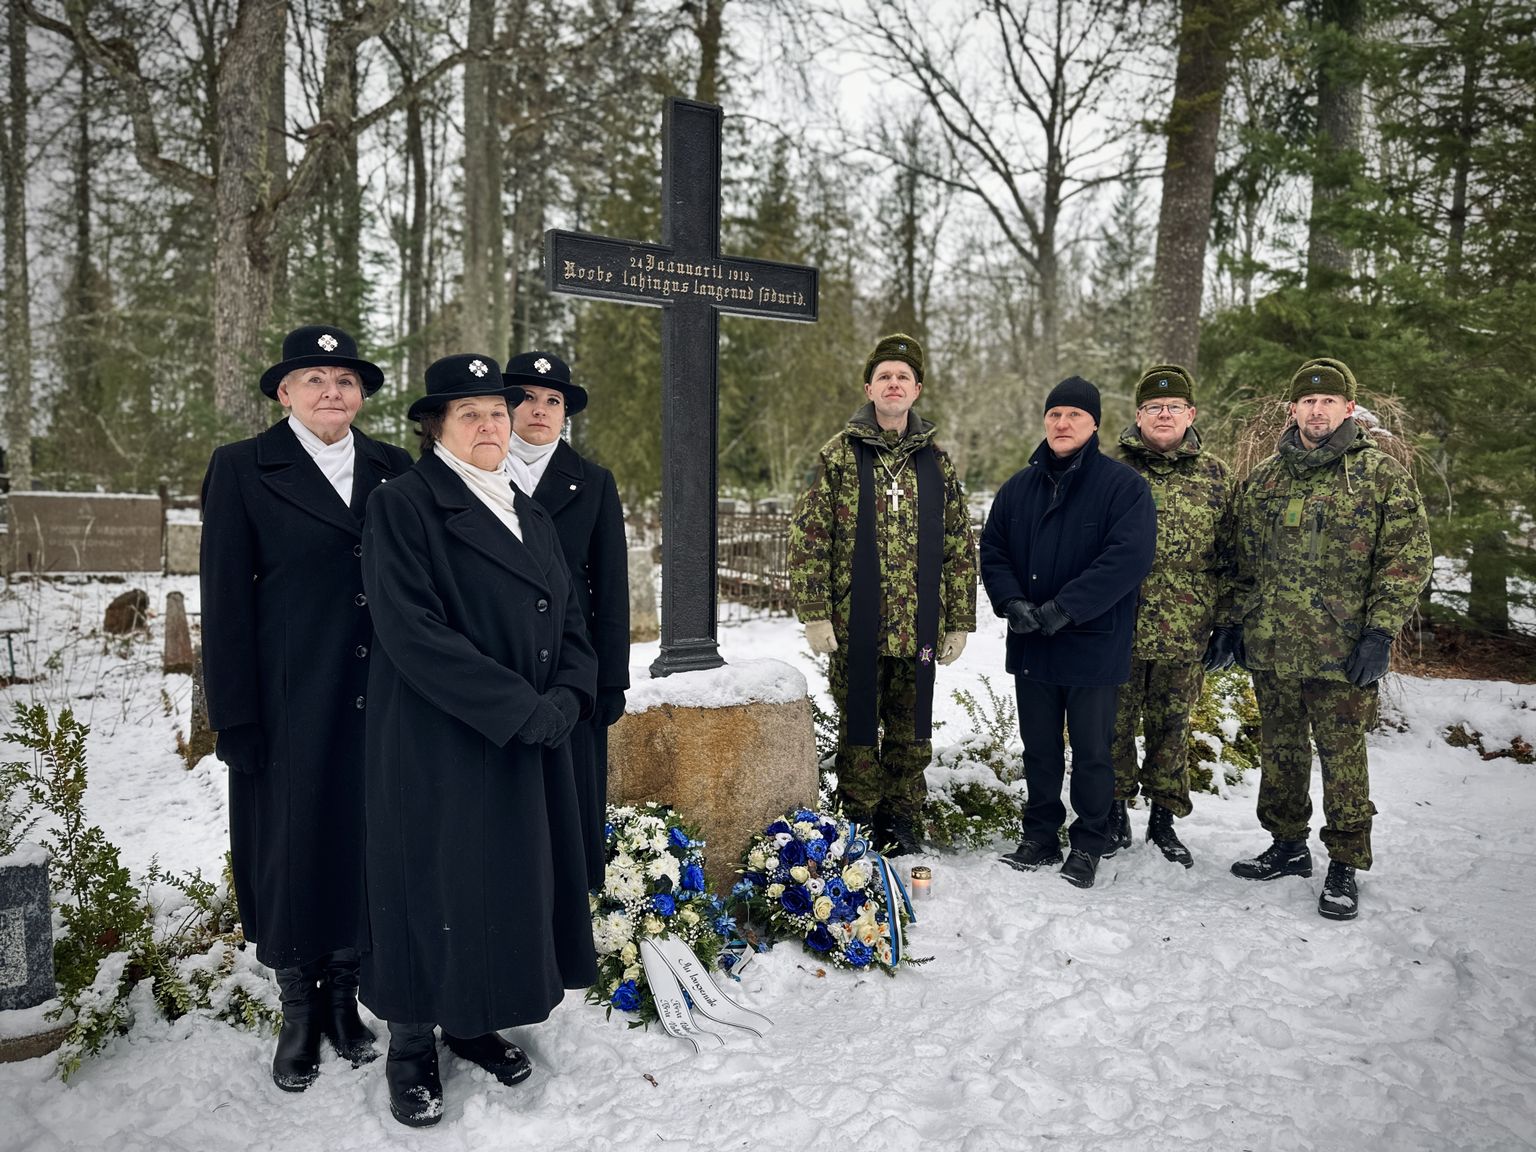 Helme kalmistul meenutati Roobe lahingut langenud sõdurite hauale püstitatud risti juures.